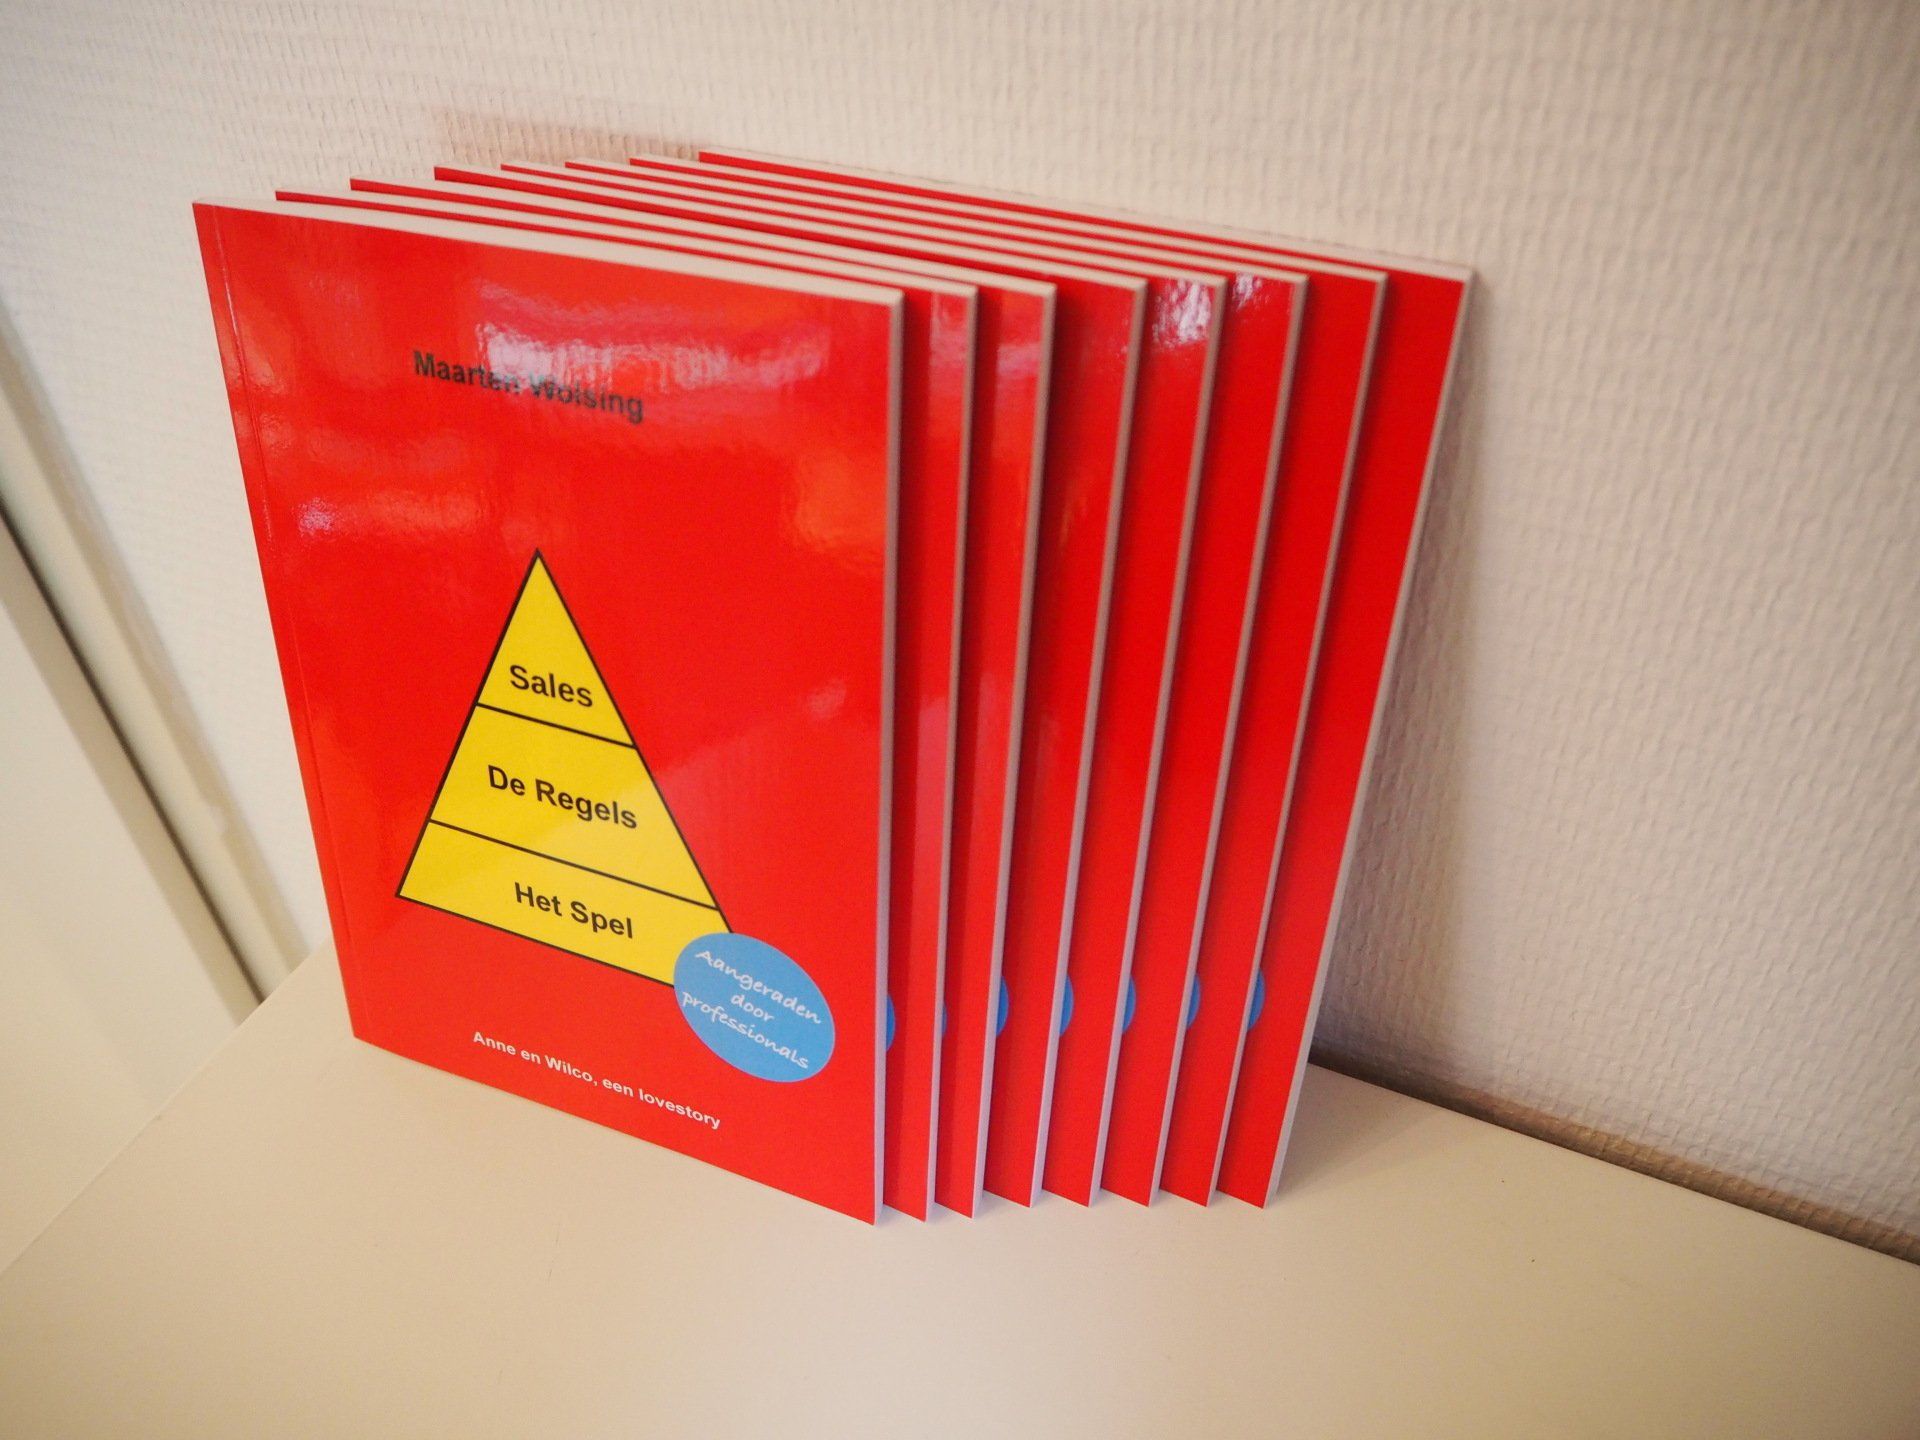 Een stapel rode boeken met een gele driehoek op de omslag